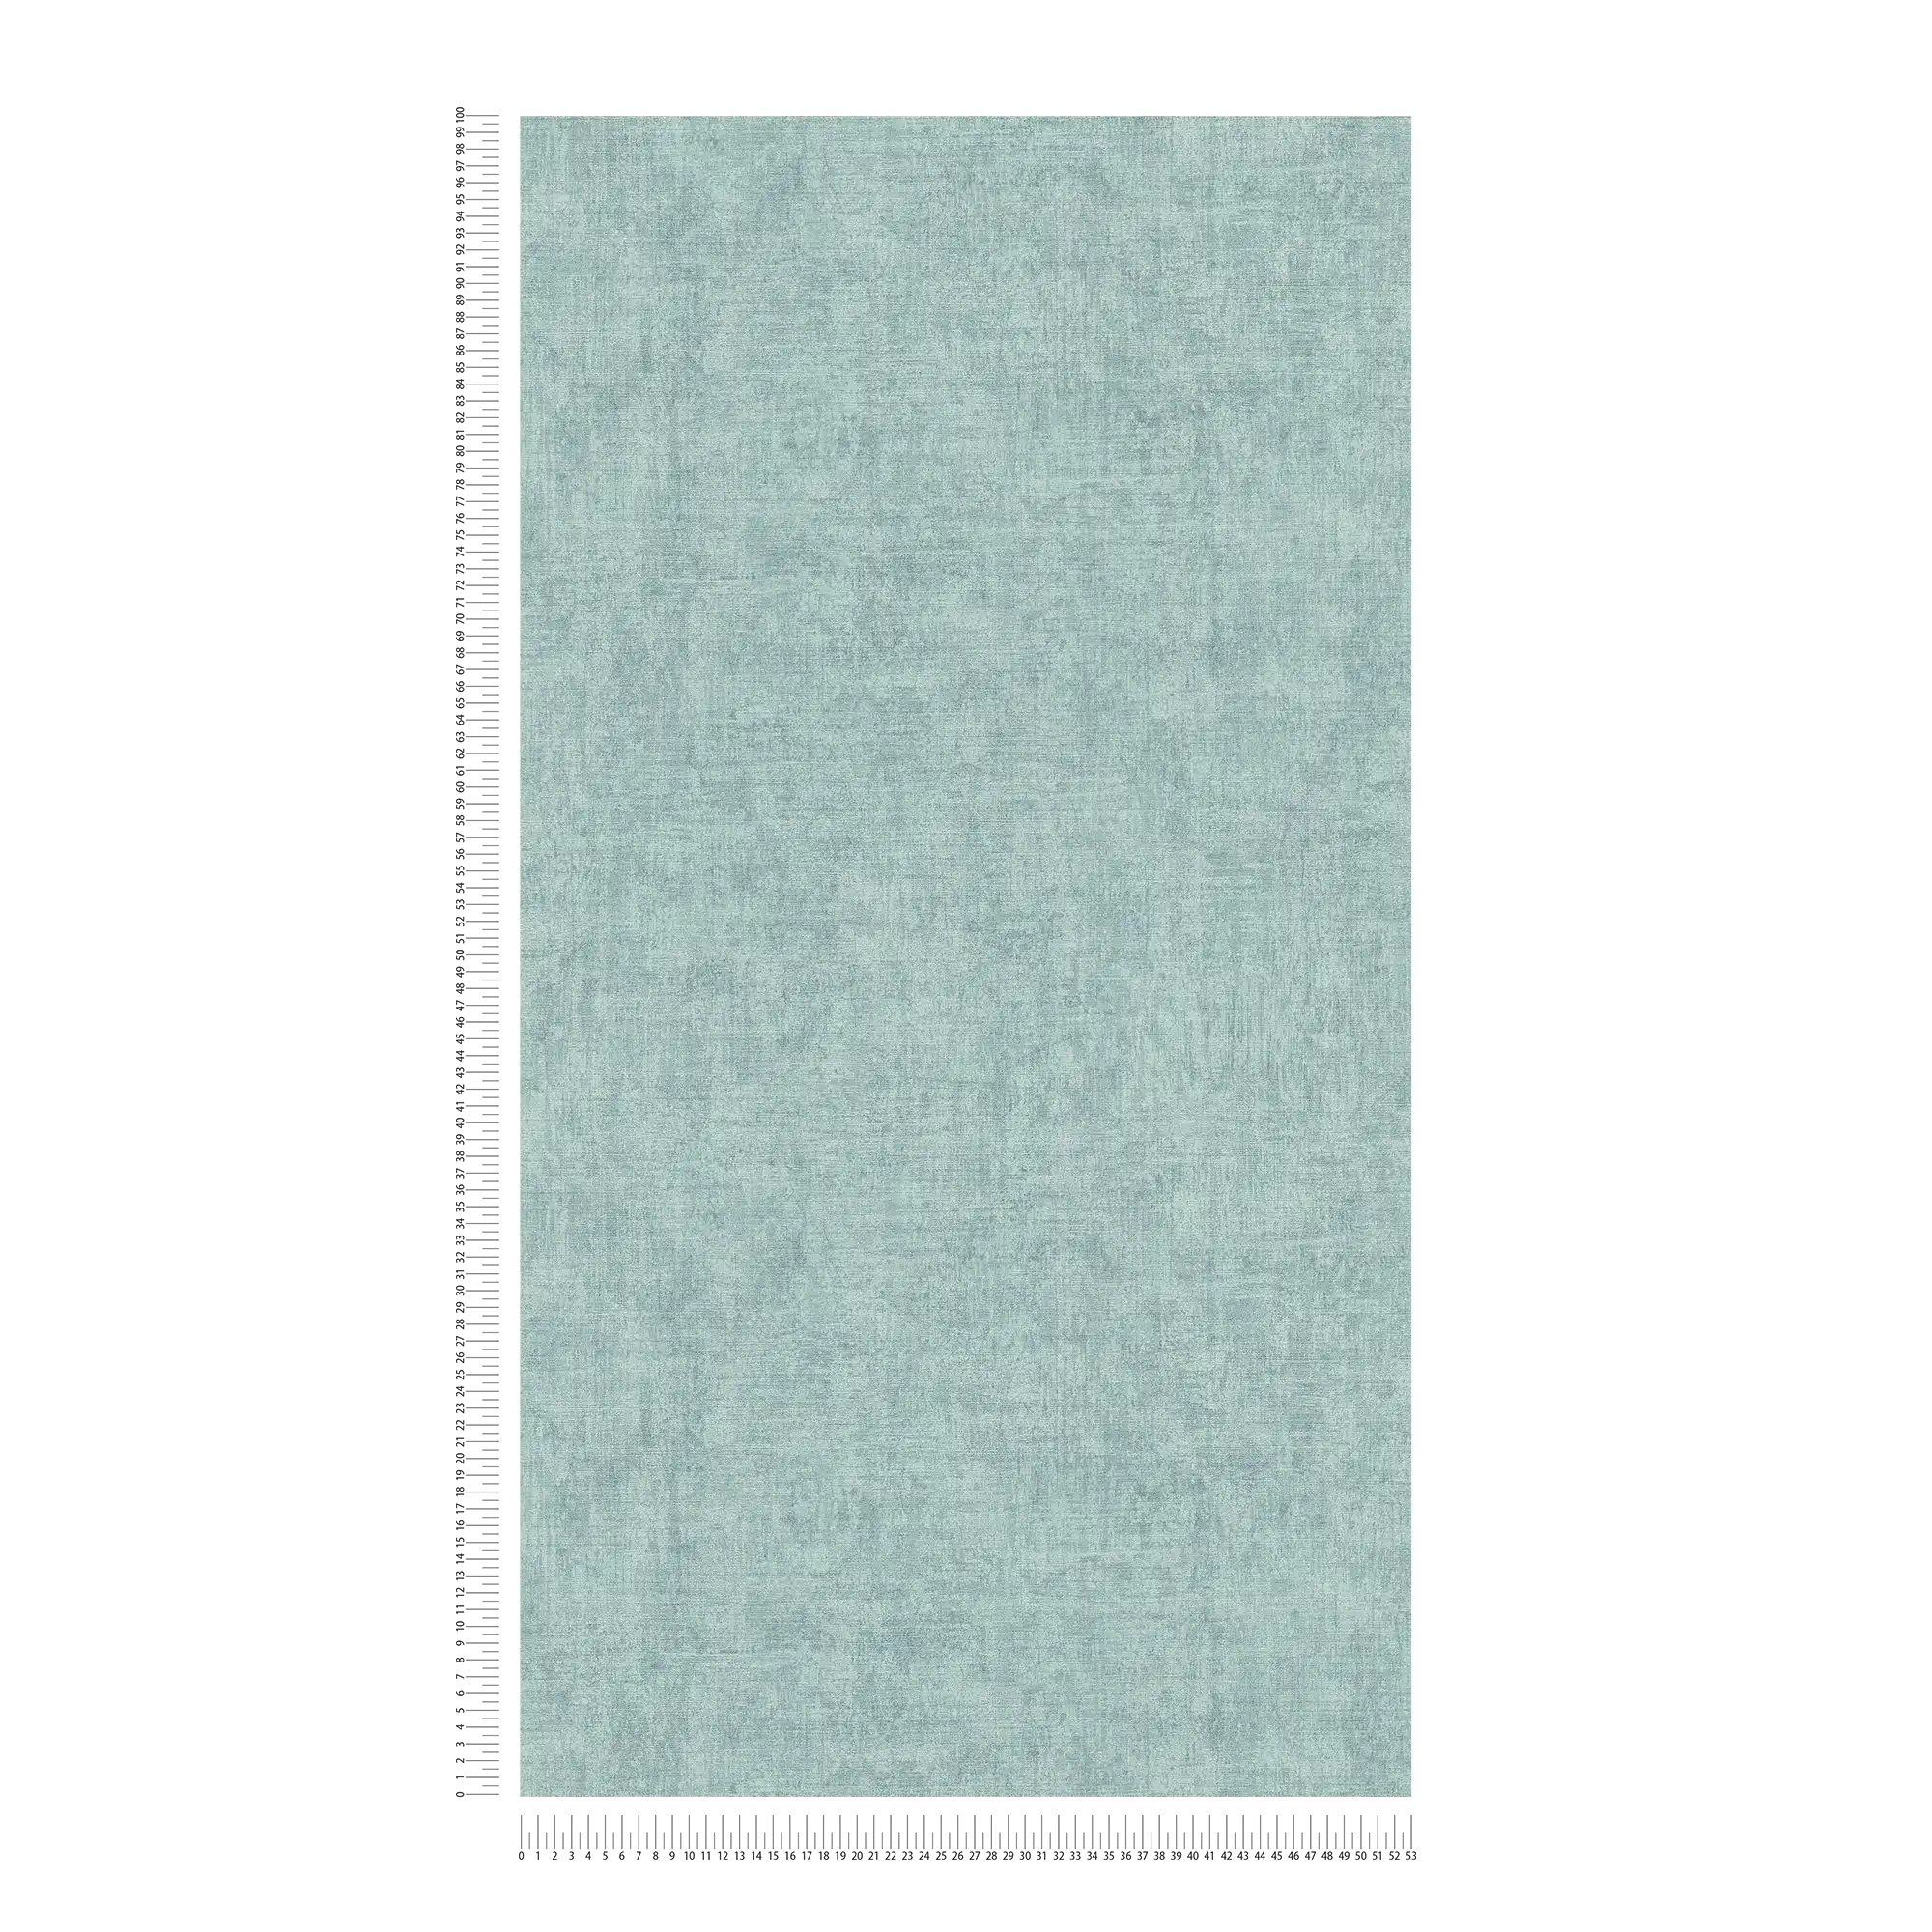             Carta da parati in tessuto non tessuto a tinta unita, con motivo screziato e strutturato - blu
        